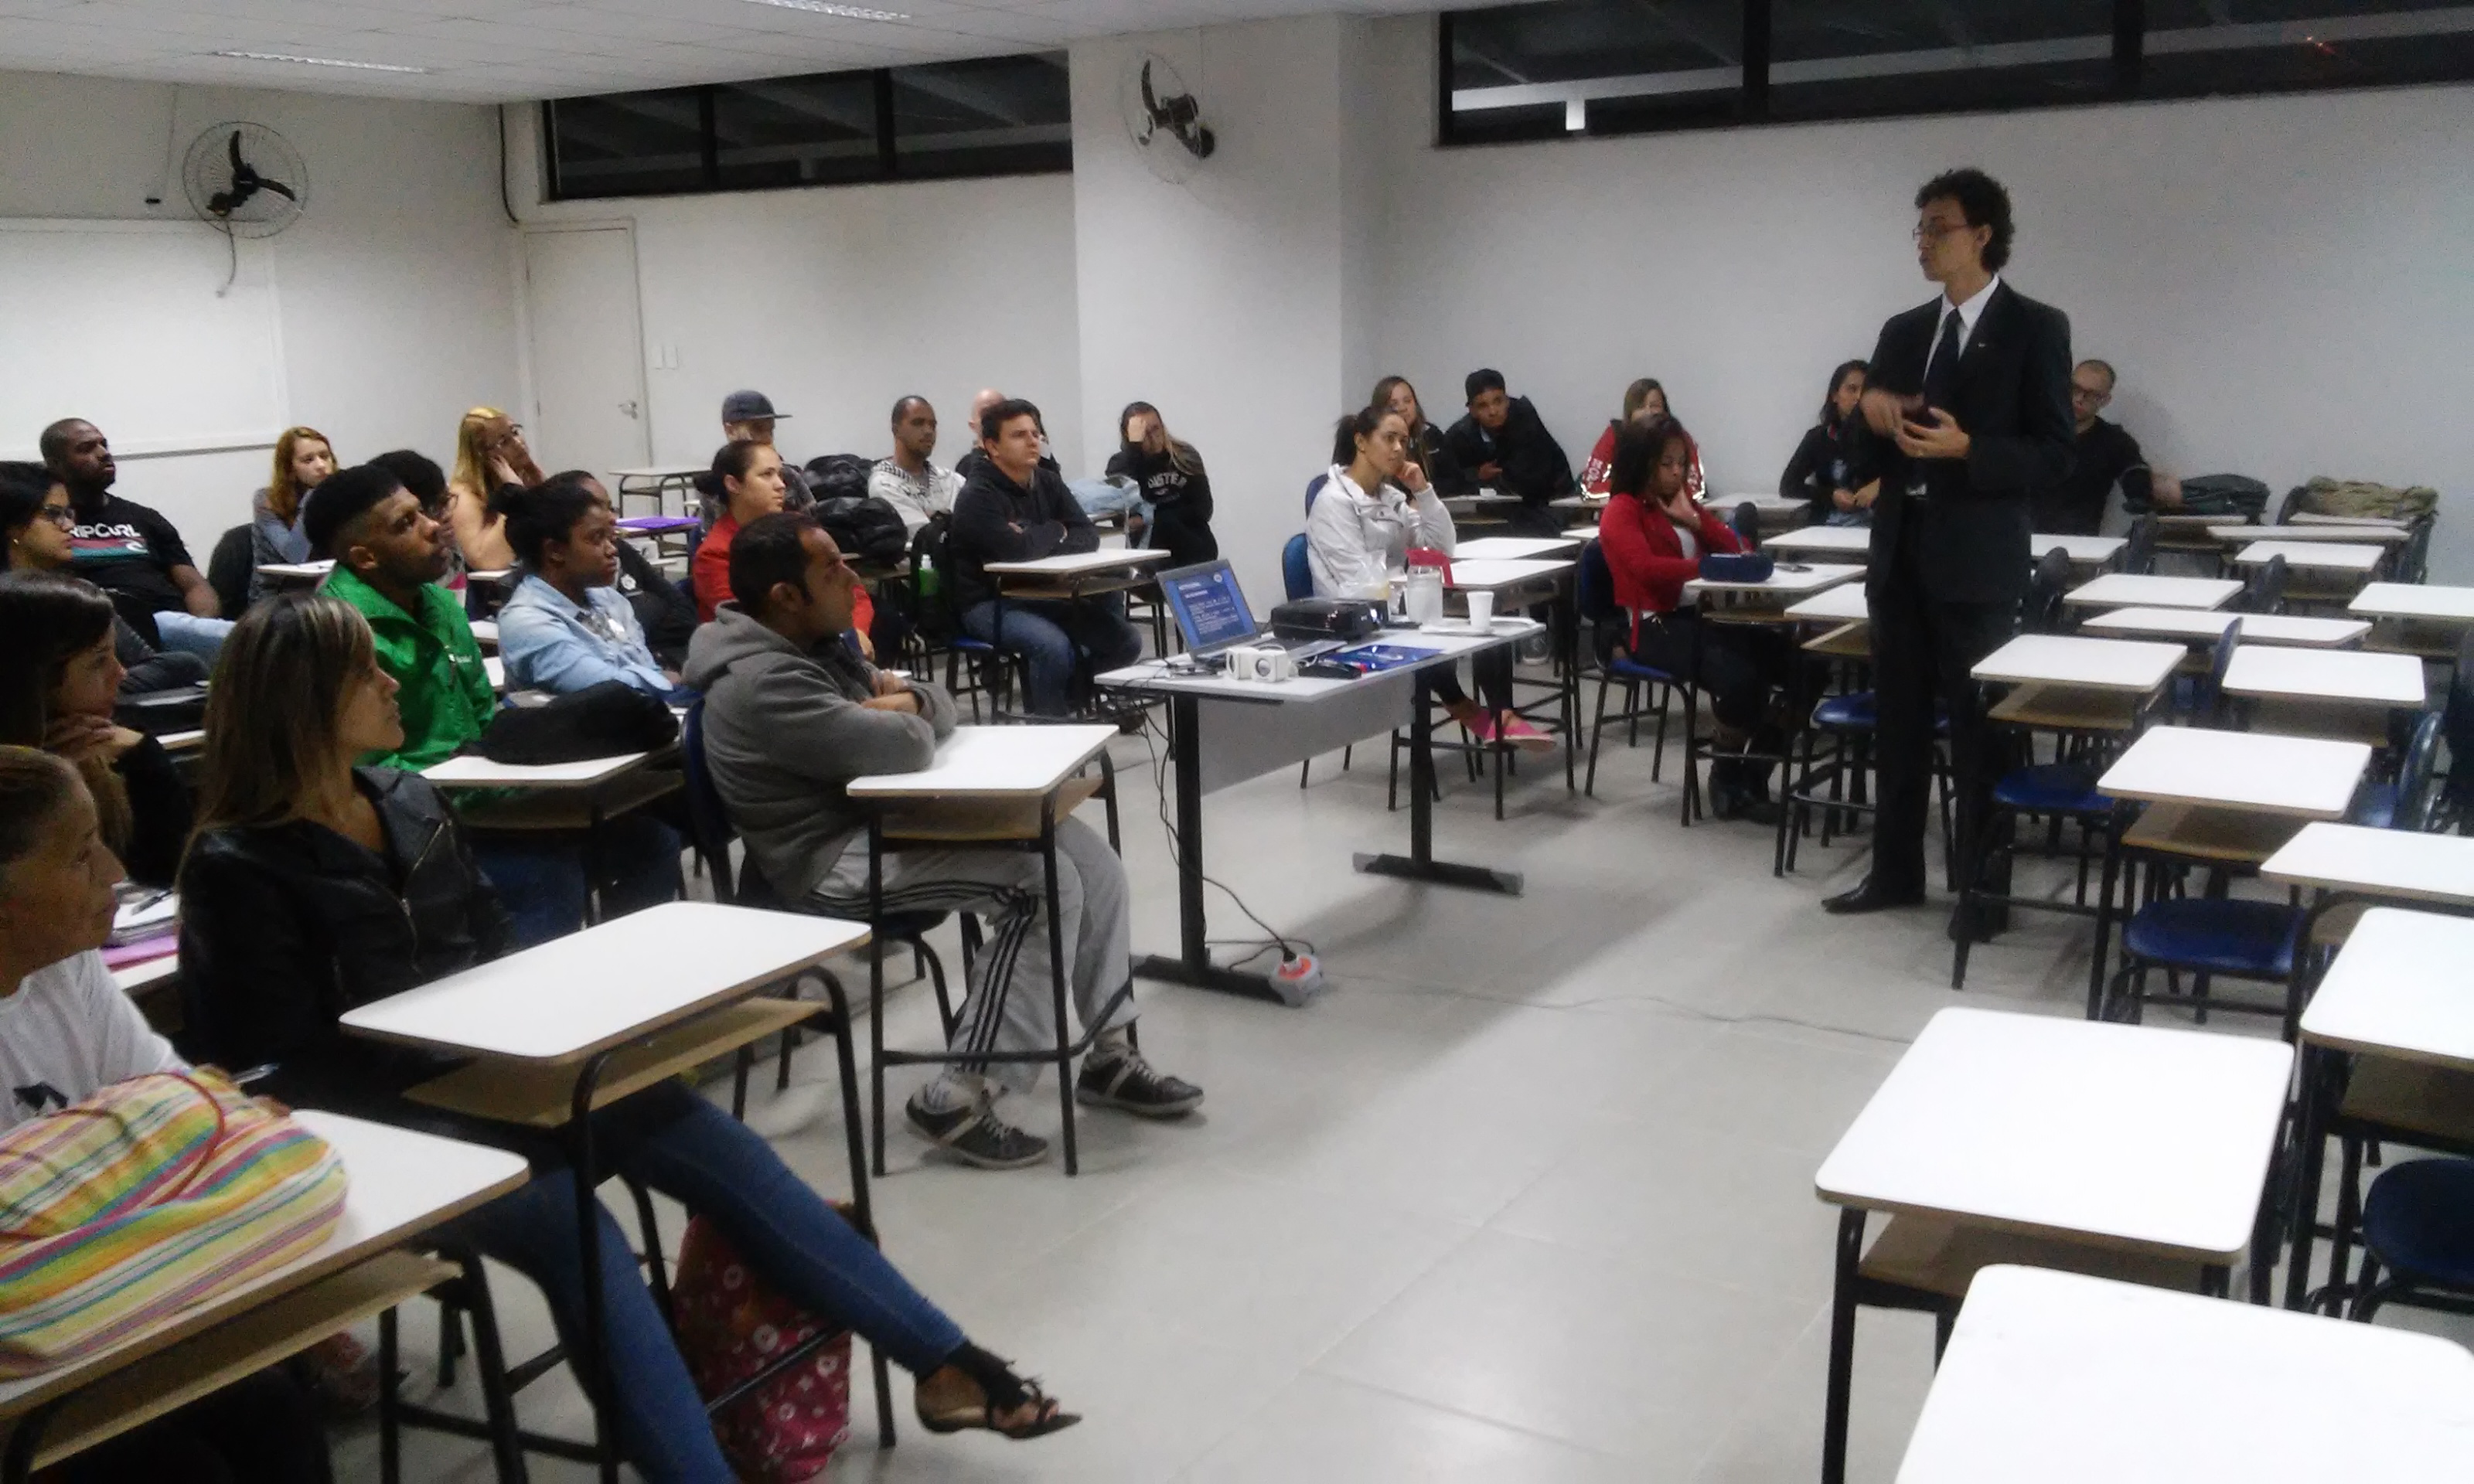 Representante do Conselho Regional de Administração de Minas Gerais palestra para alunos de Juiz de Fora